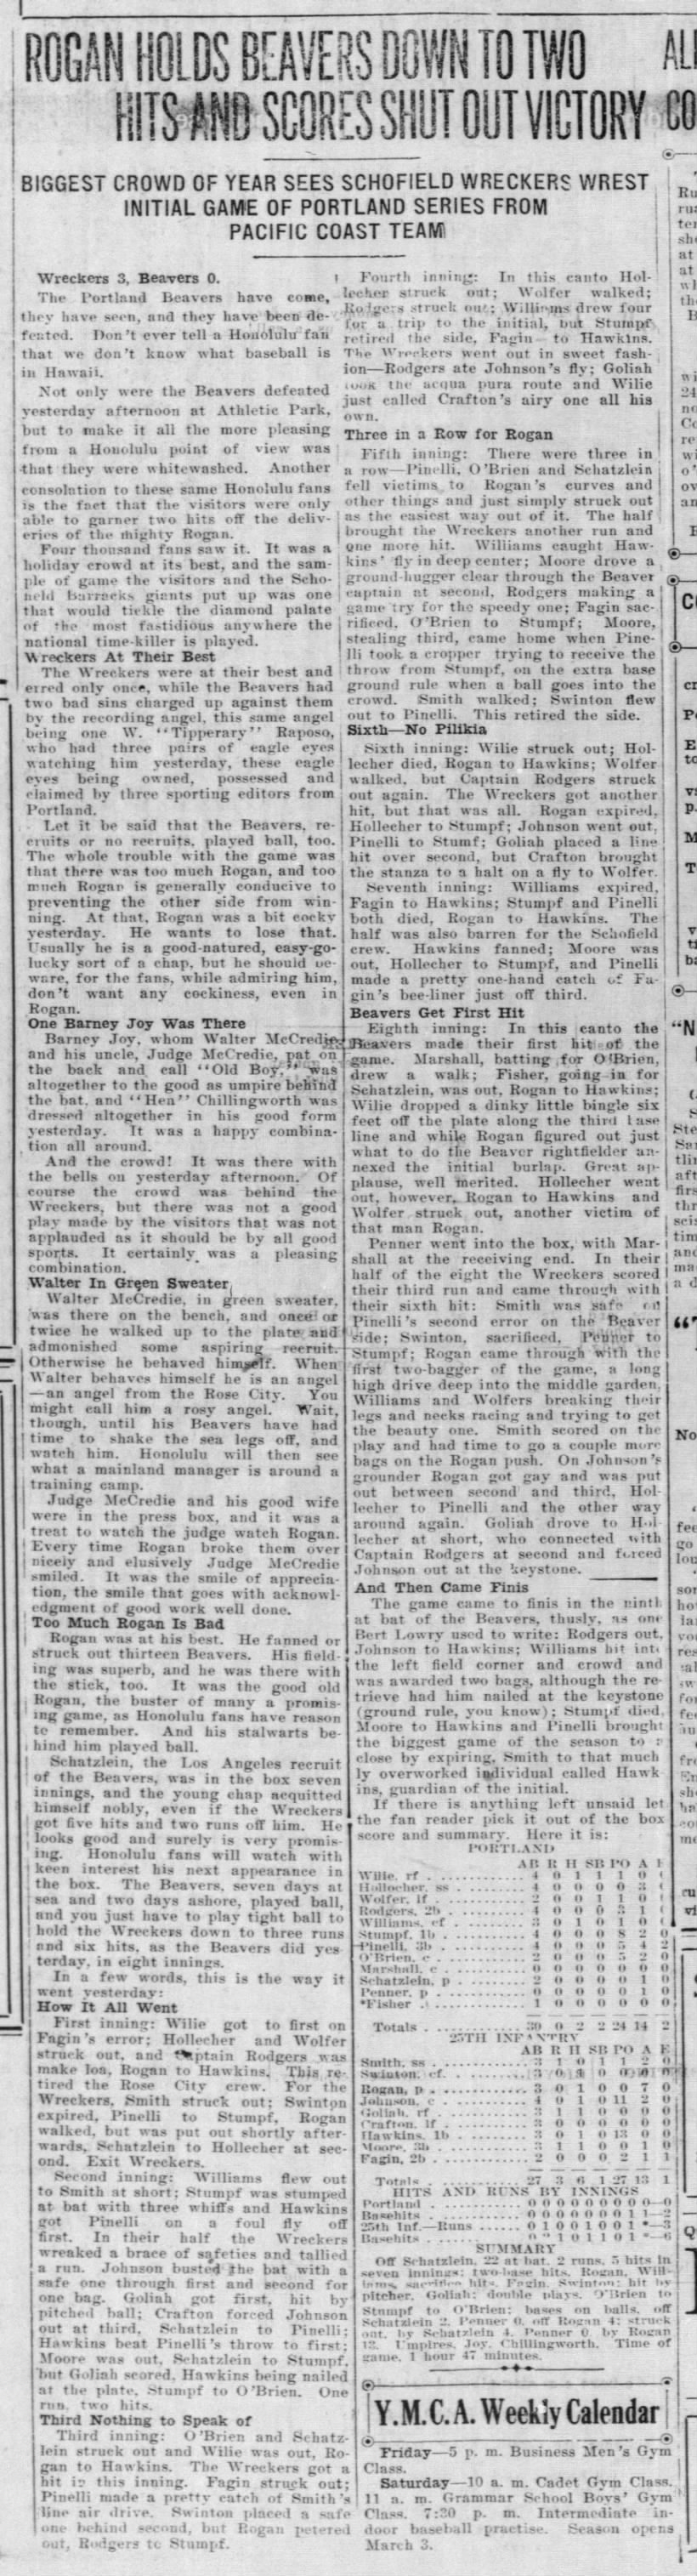 Honolulu Advertiser_1917-2-23_p13